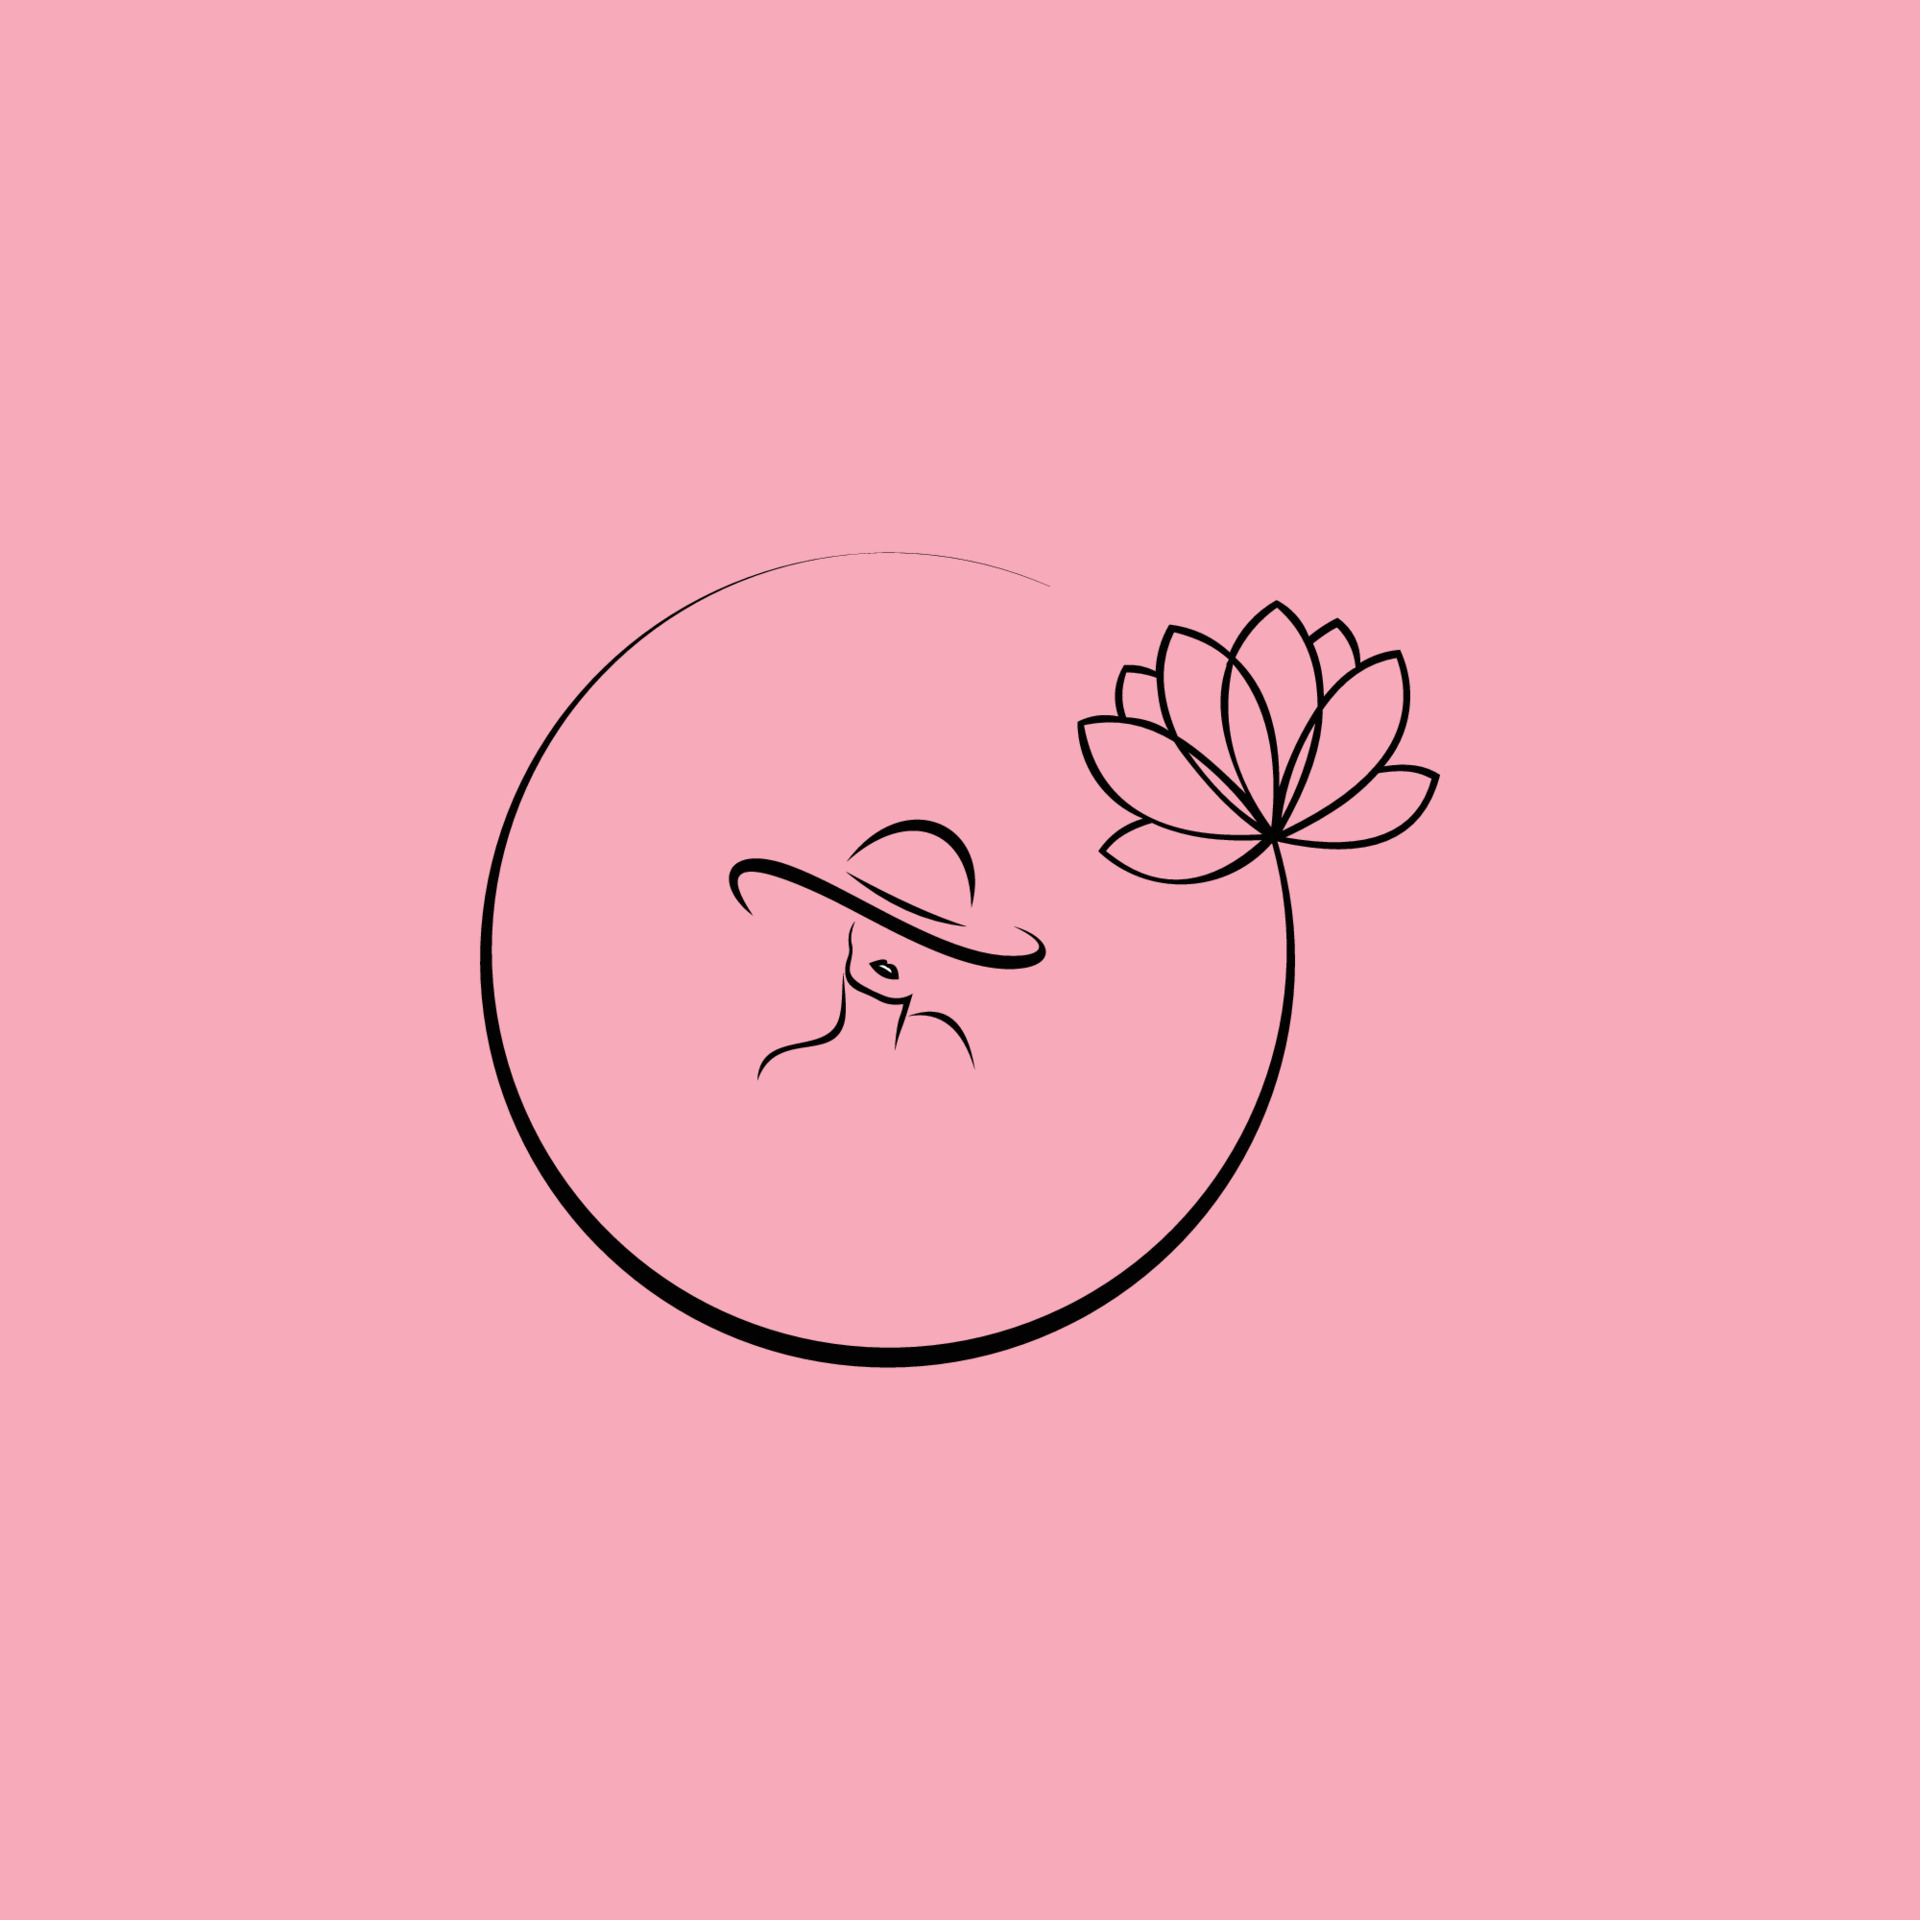 Hãy cùng đón nhận hình ảnh logo với phông chữ xinh xắn và nền màu hồng dịu nhẹ. Với thiết kế đầy chất thơ, đem lại cảm giác tươi mới và đầy năng lượng - như một lời hứa về vẻ đẹp.